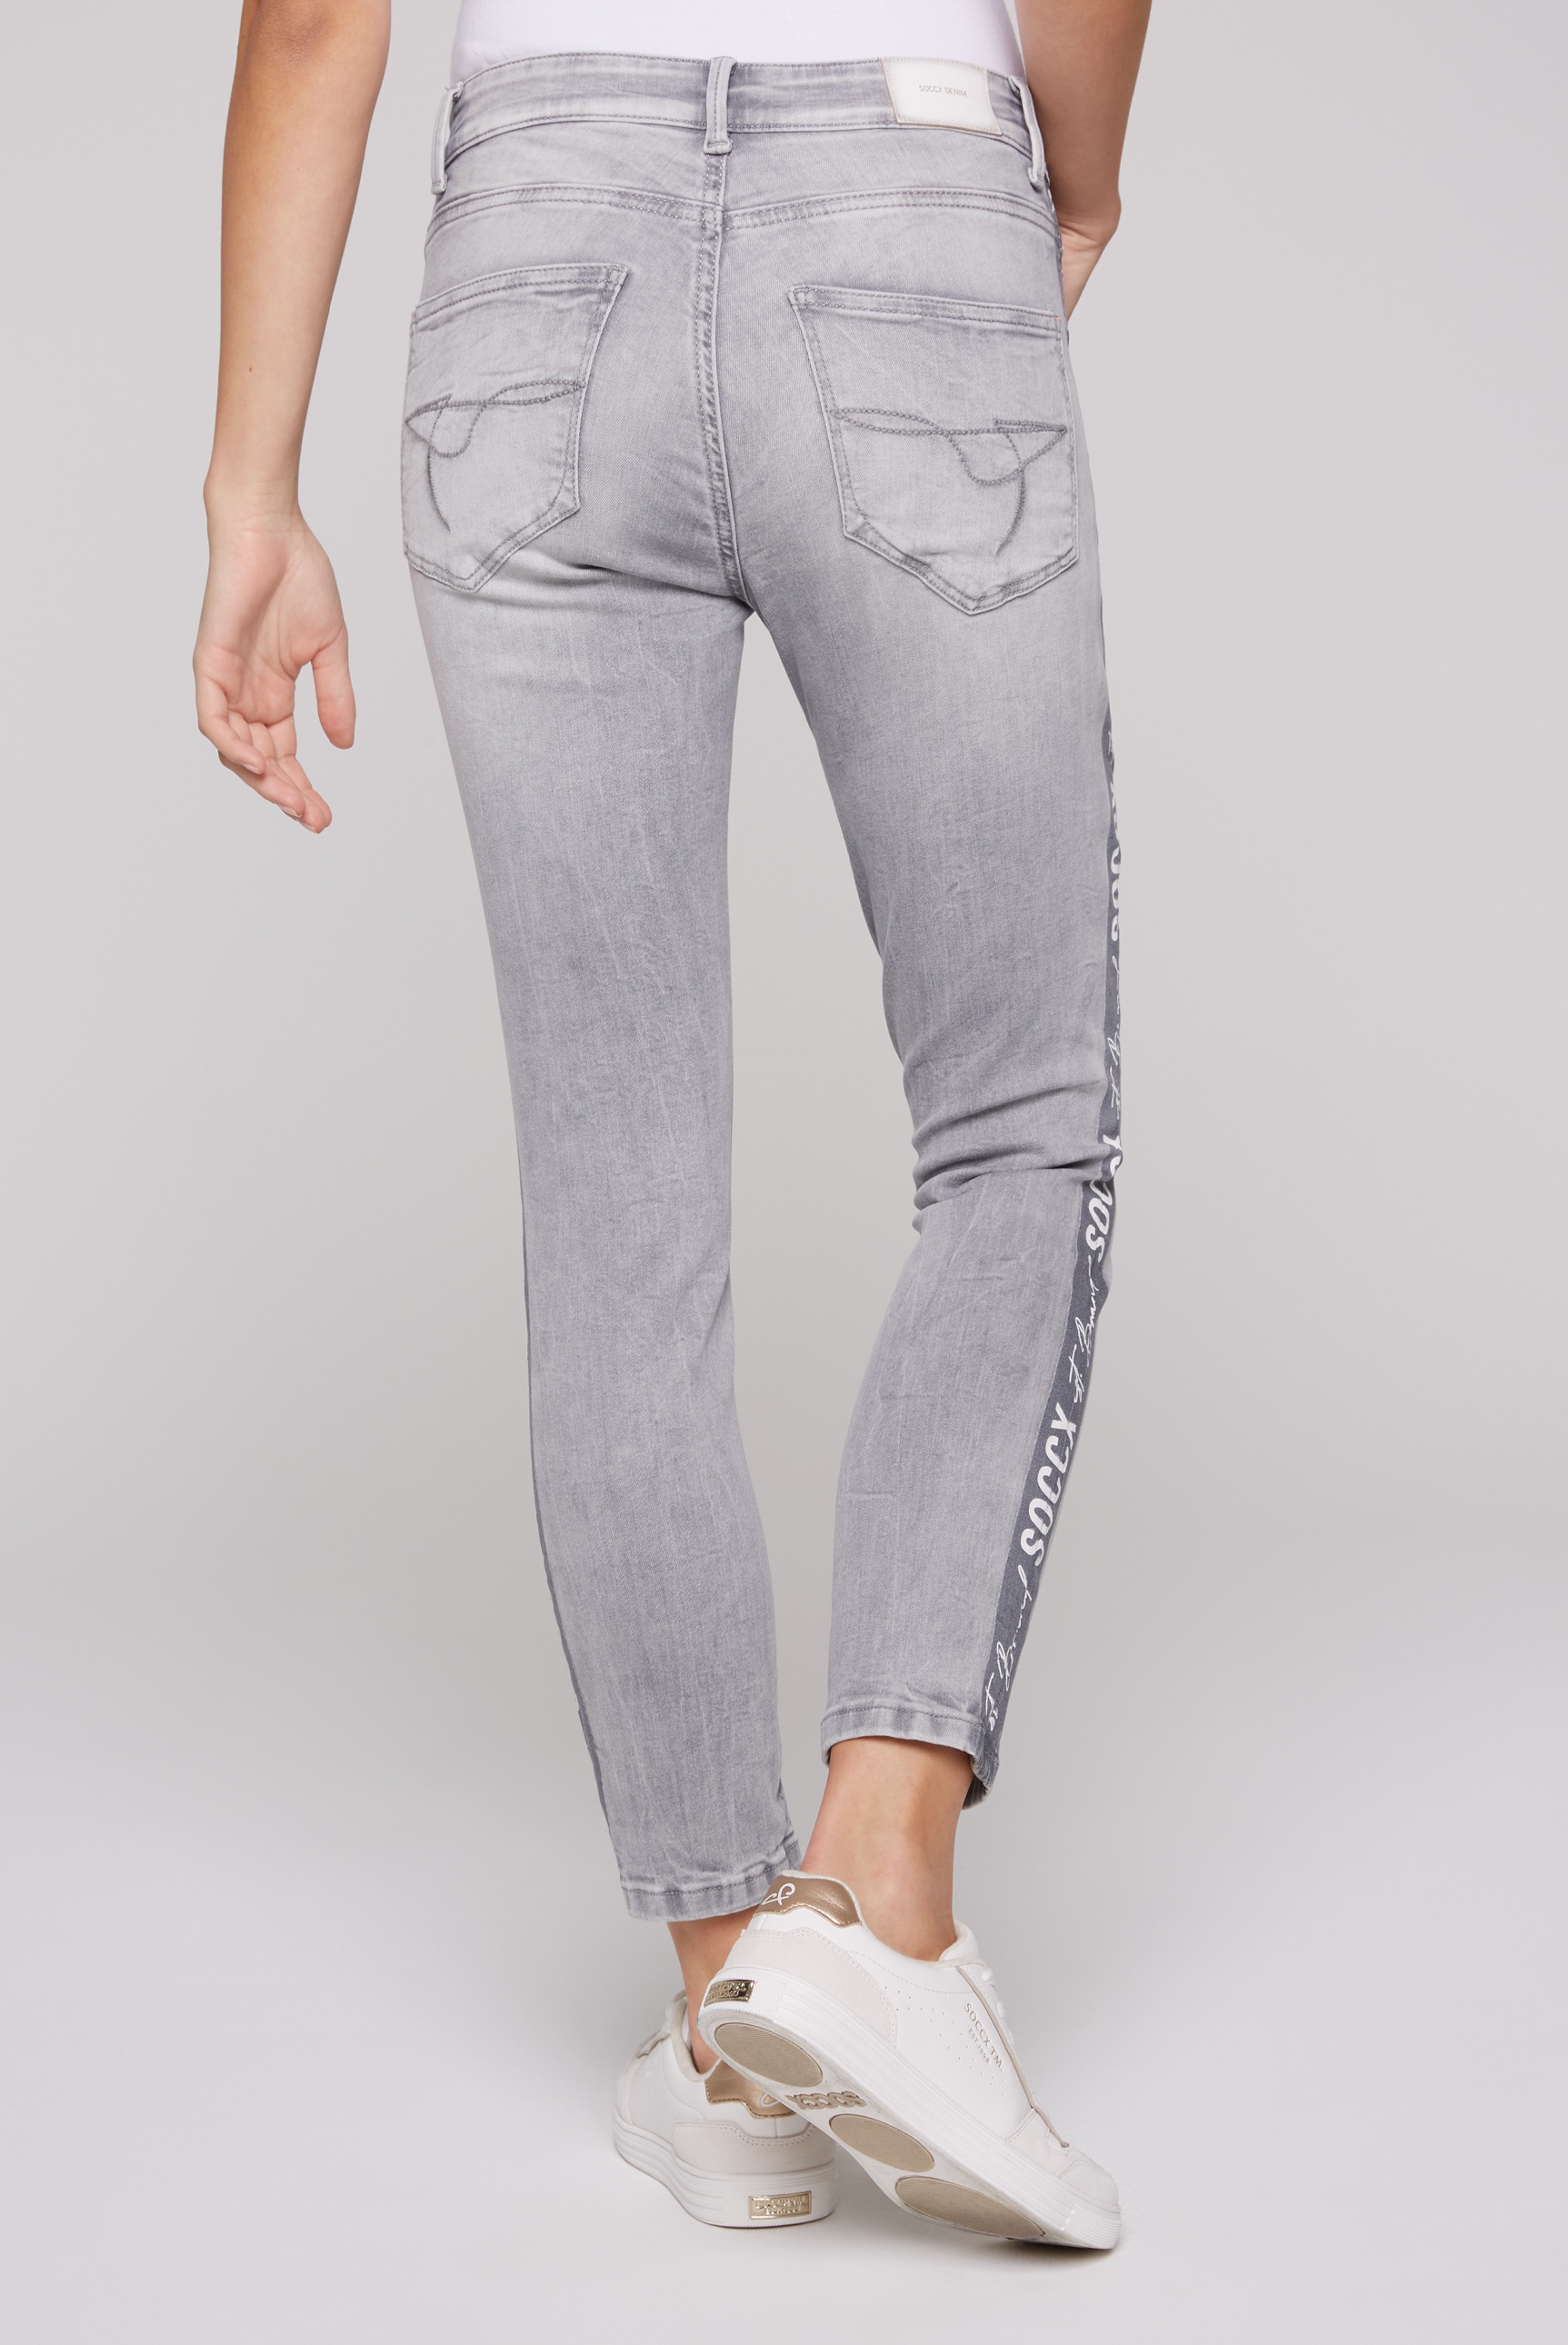 SOCCX Slim-fit-Jeans, mit verkürztem Bein